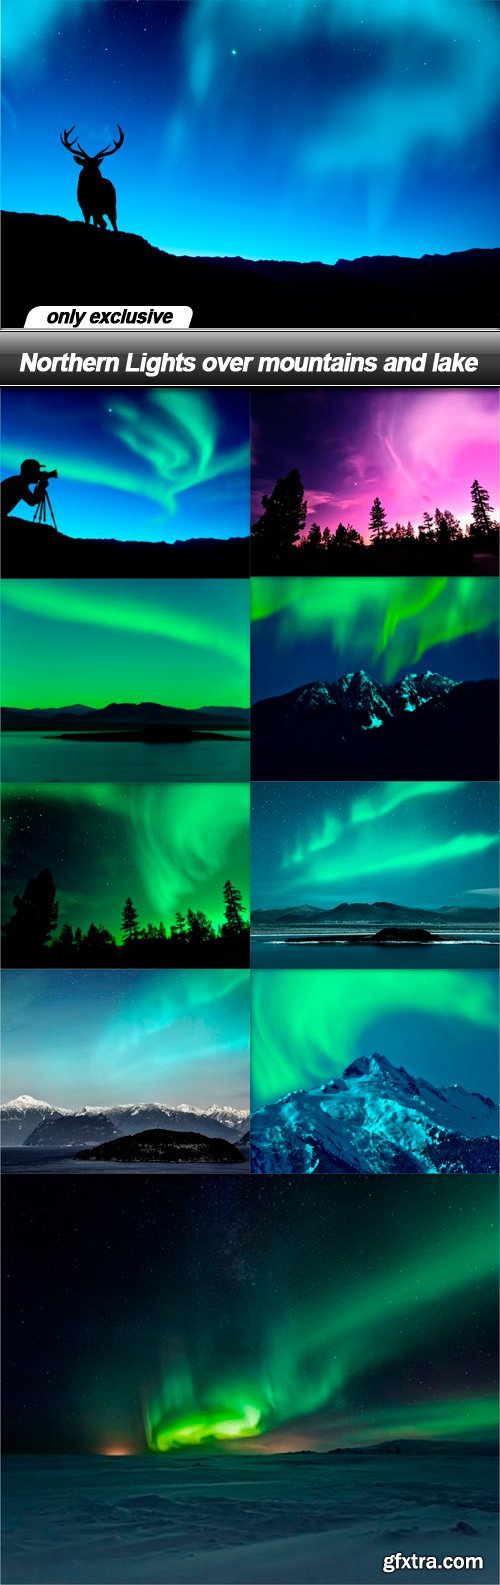 Northern Lights over mountains and lake - 10 UHQ JPEG